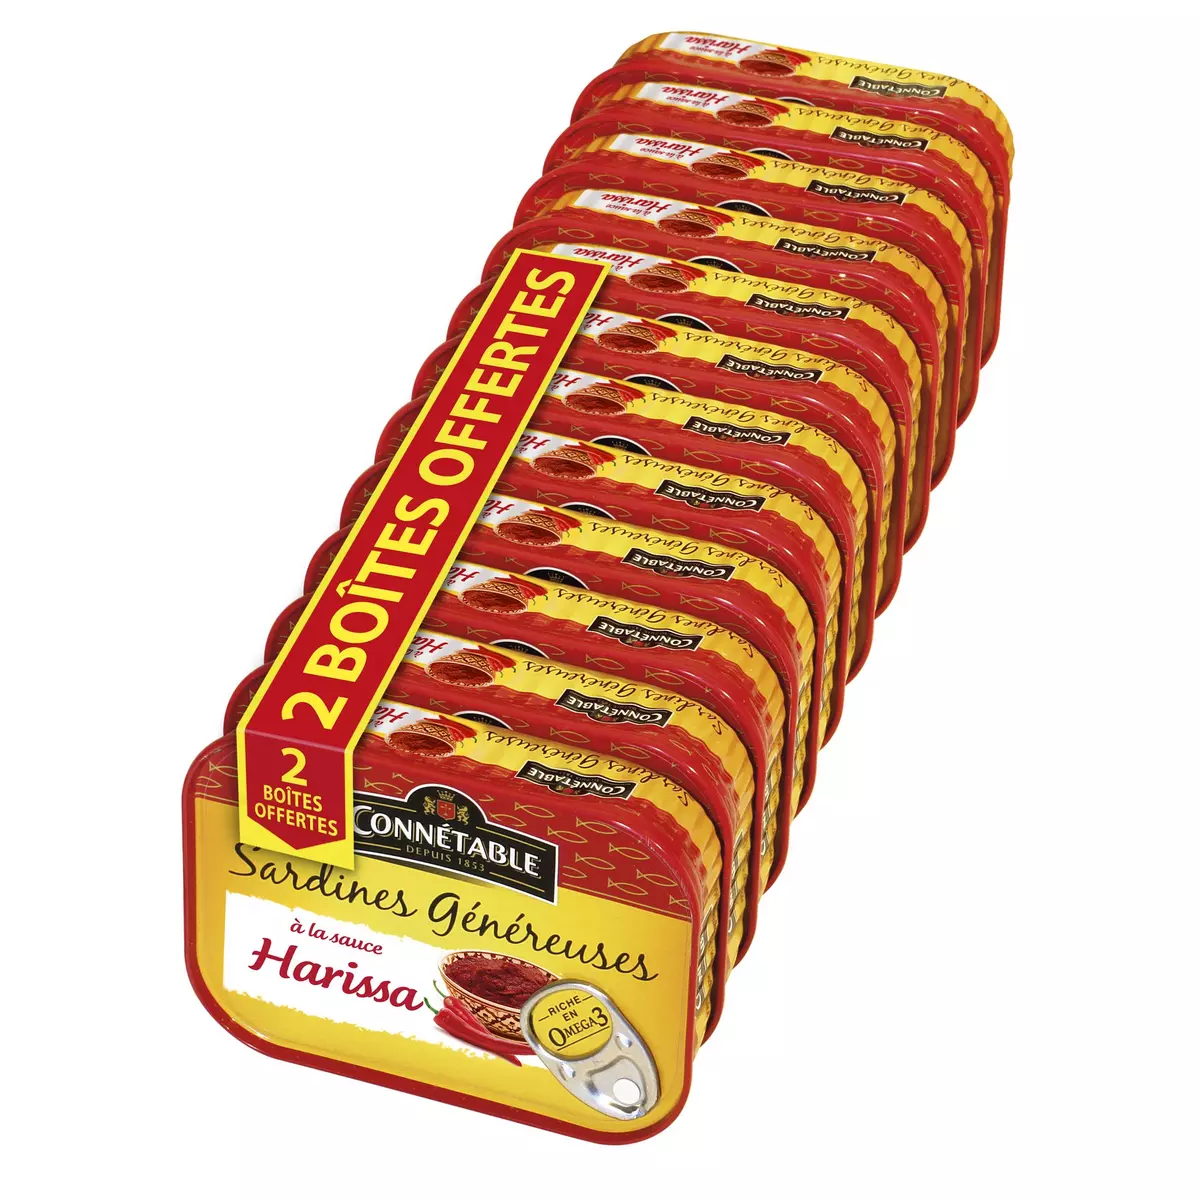 CONNETABLE Sardines sauce harissa boîte 10x140g +2 boîtes offertes 